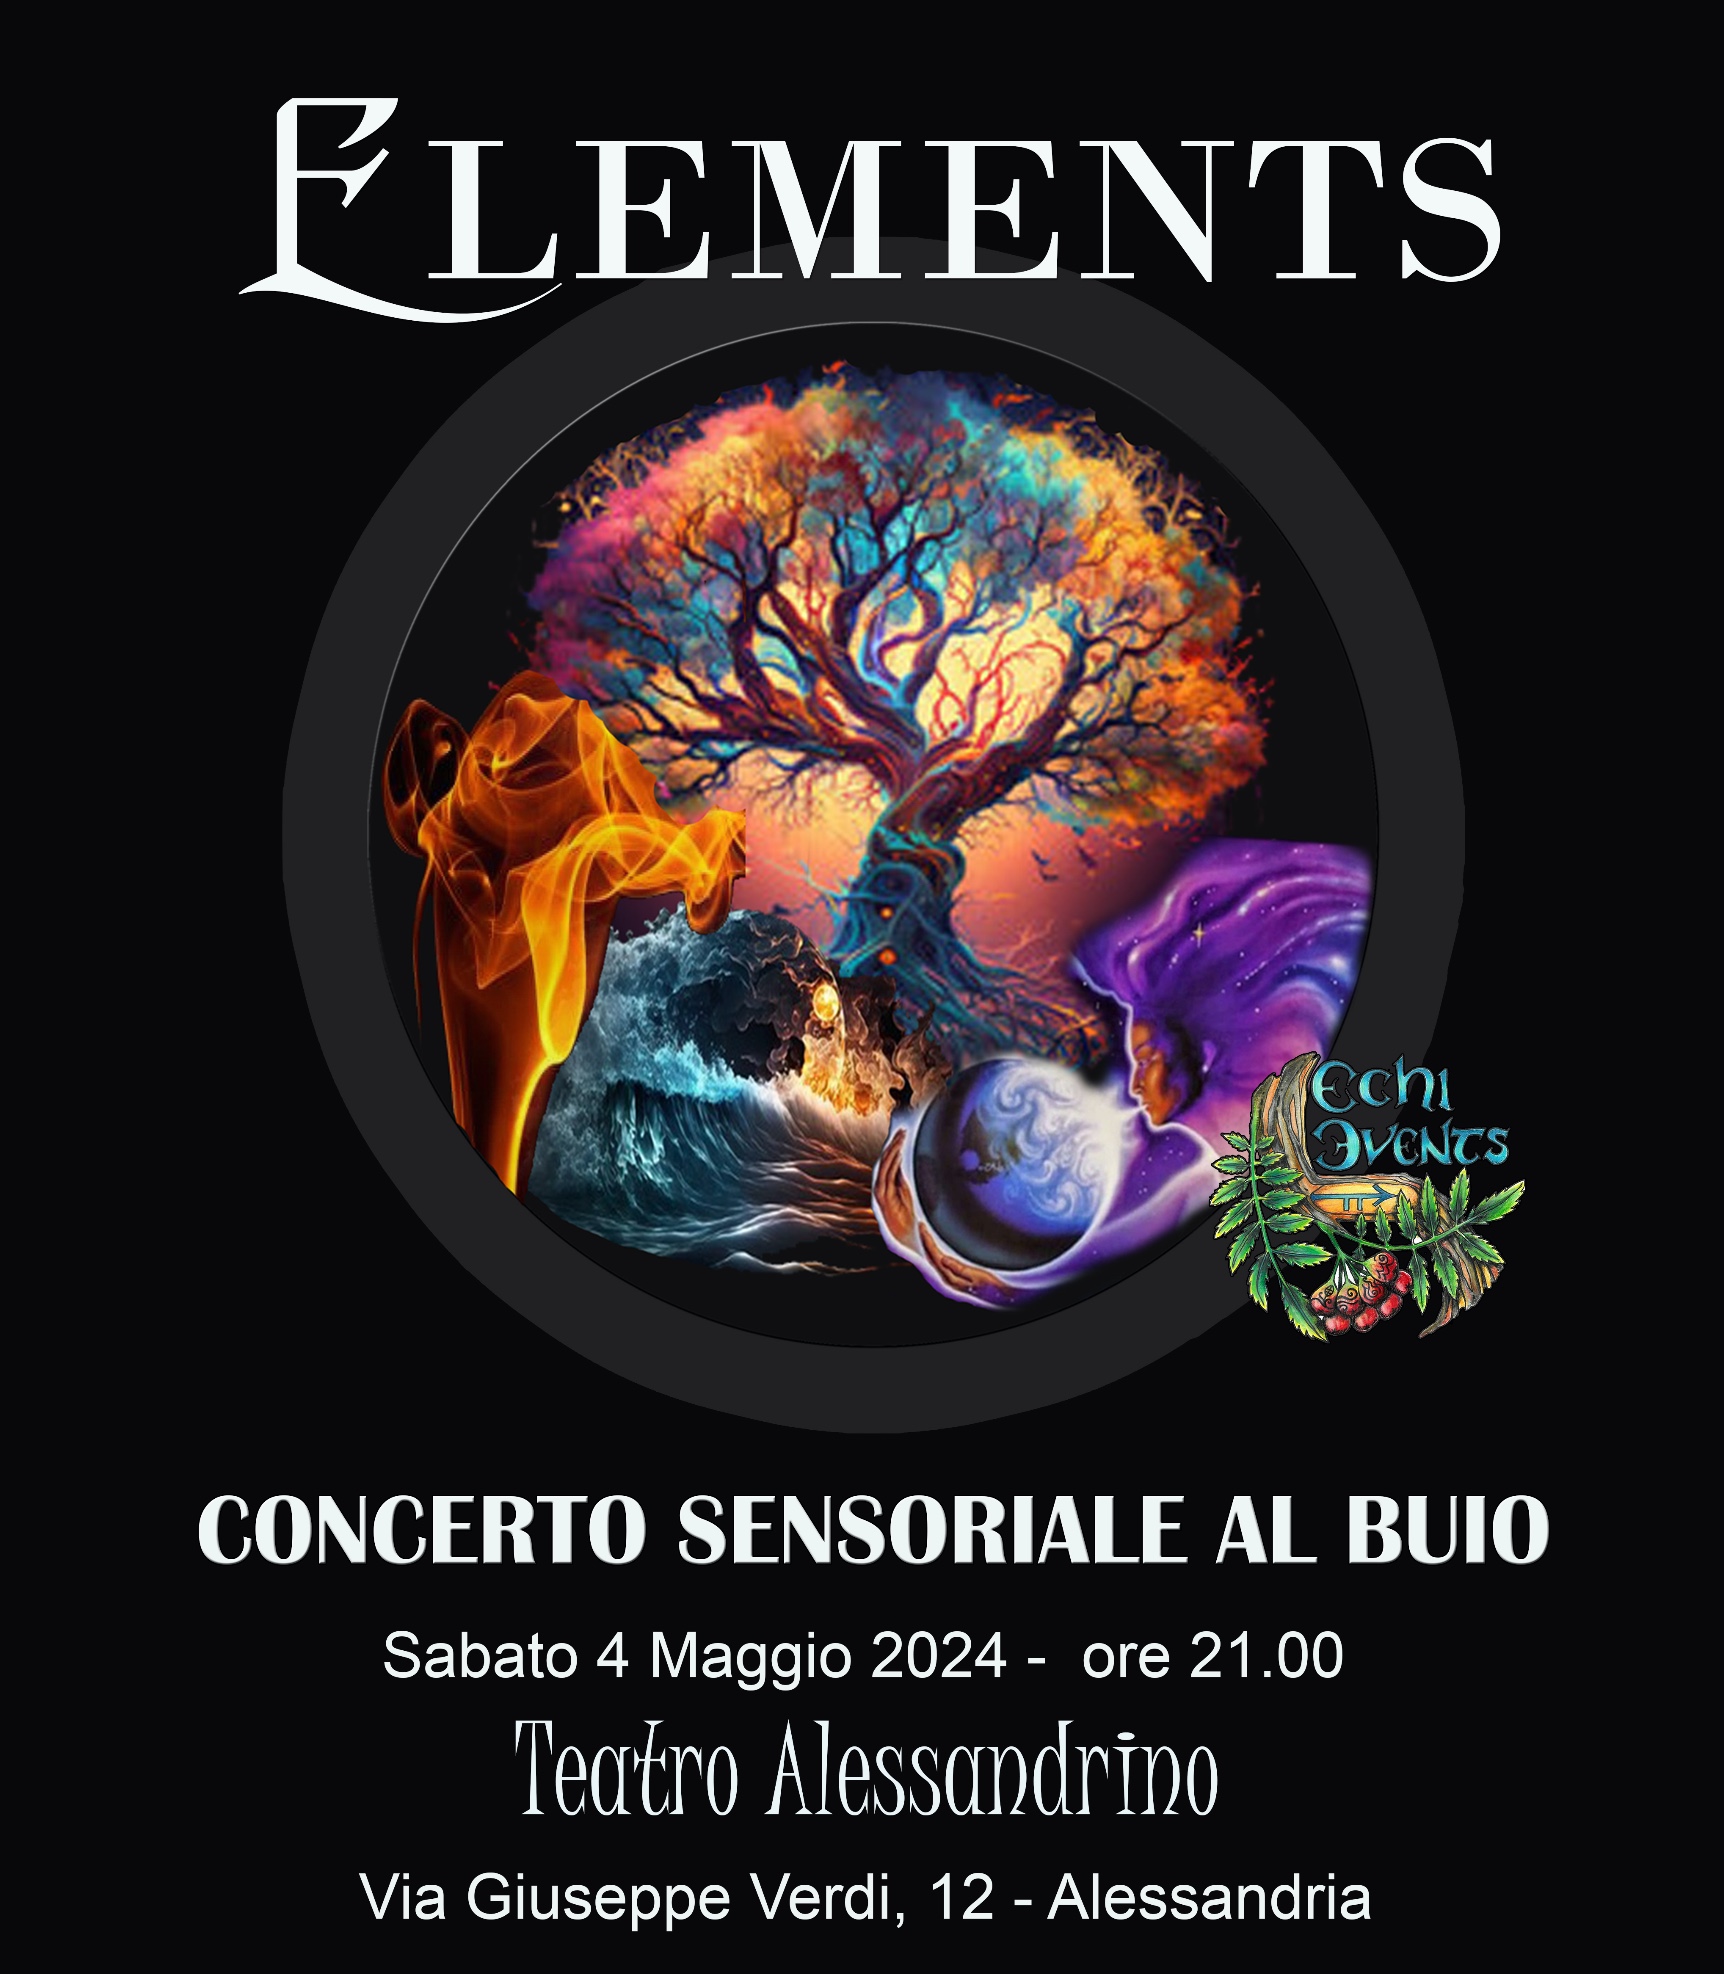 ELEMENTS concerto sensoriale al buio 4 MAGGIO 2024 - sabato ore 21.00